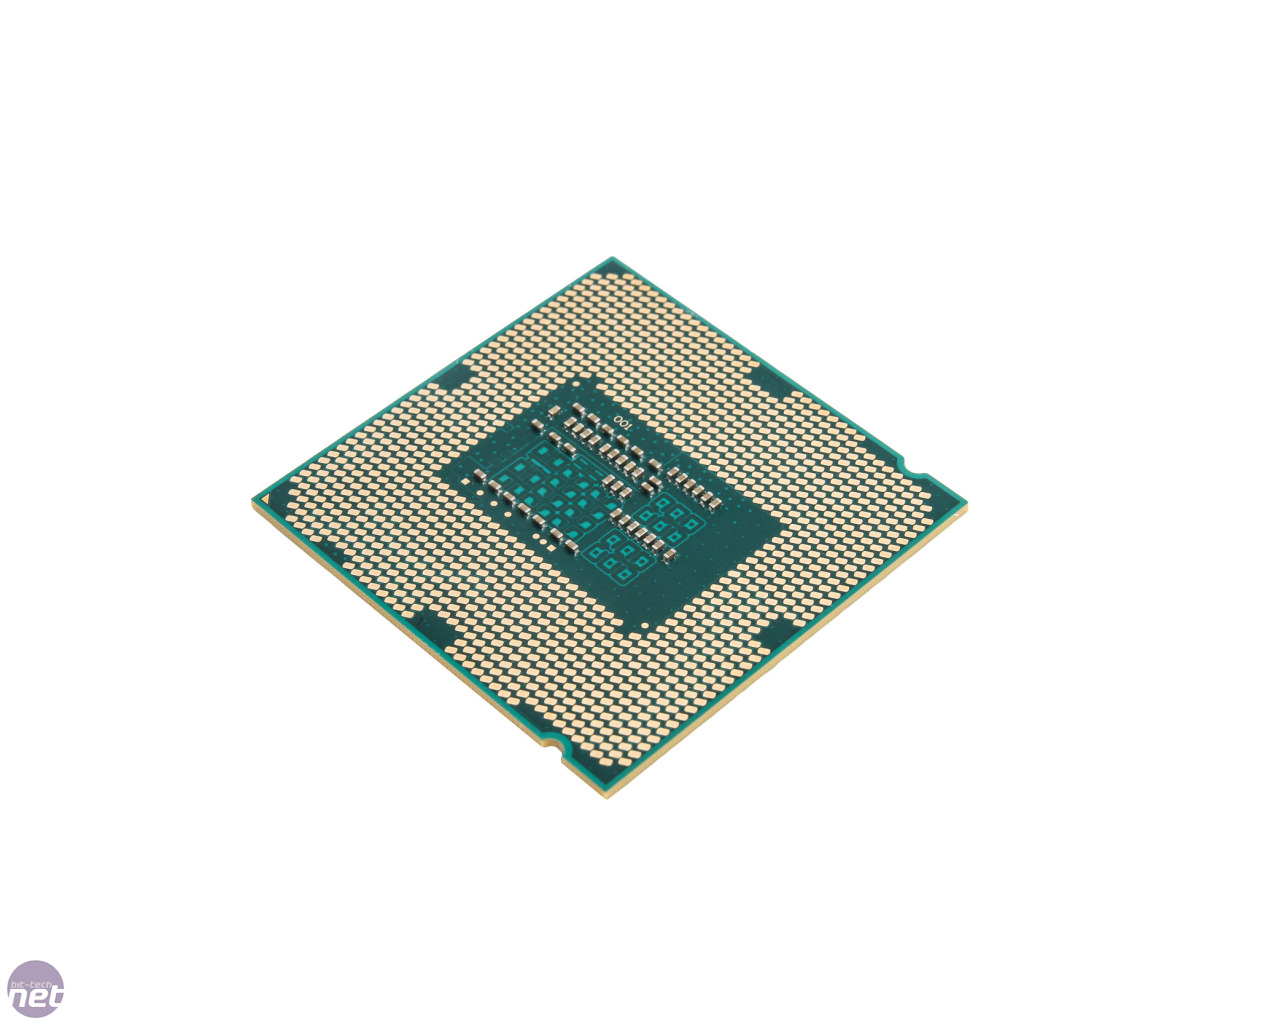 Intel i5 4400. Intel Core i3 4130. Intel Core i3-4130 Haswell lga1150, 2 x 3400 МГЦ. Микропроцессор Core i3. I5 4400.